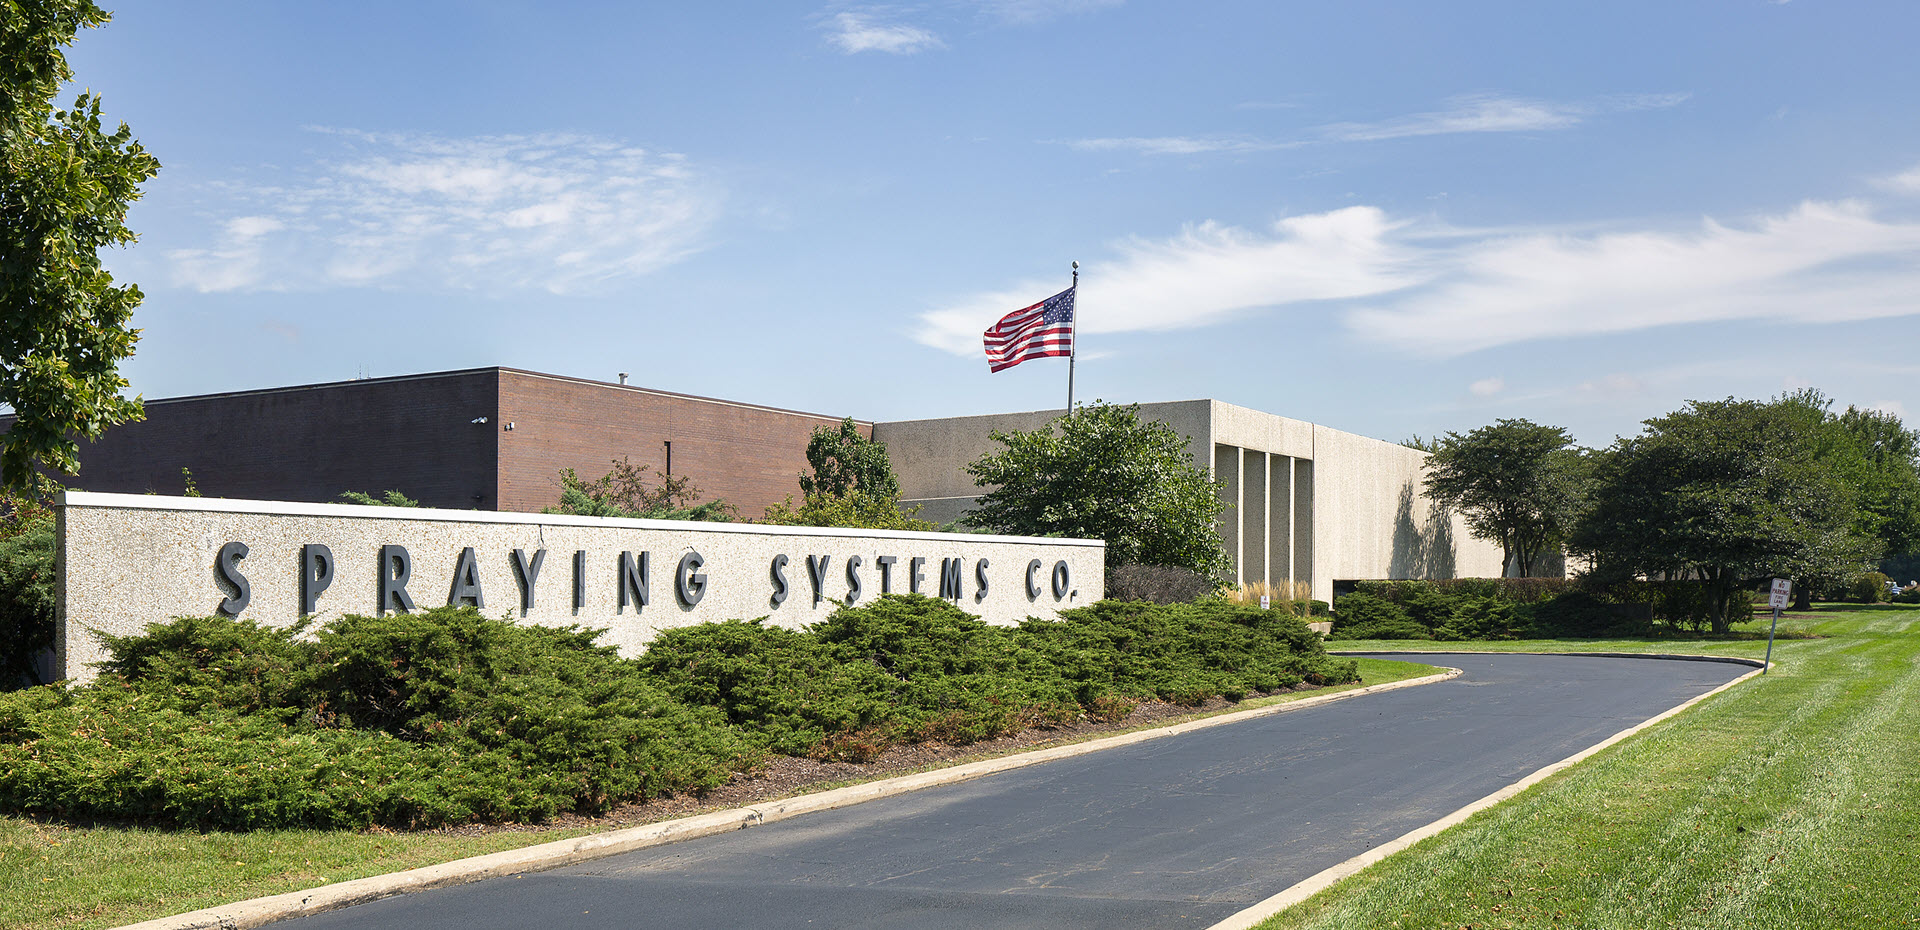 Bürogebäude von Spraying Systems Co. in Wheaton, IL